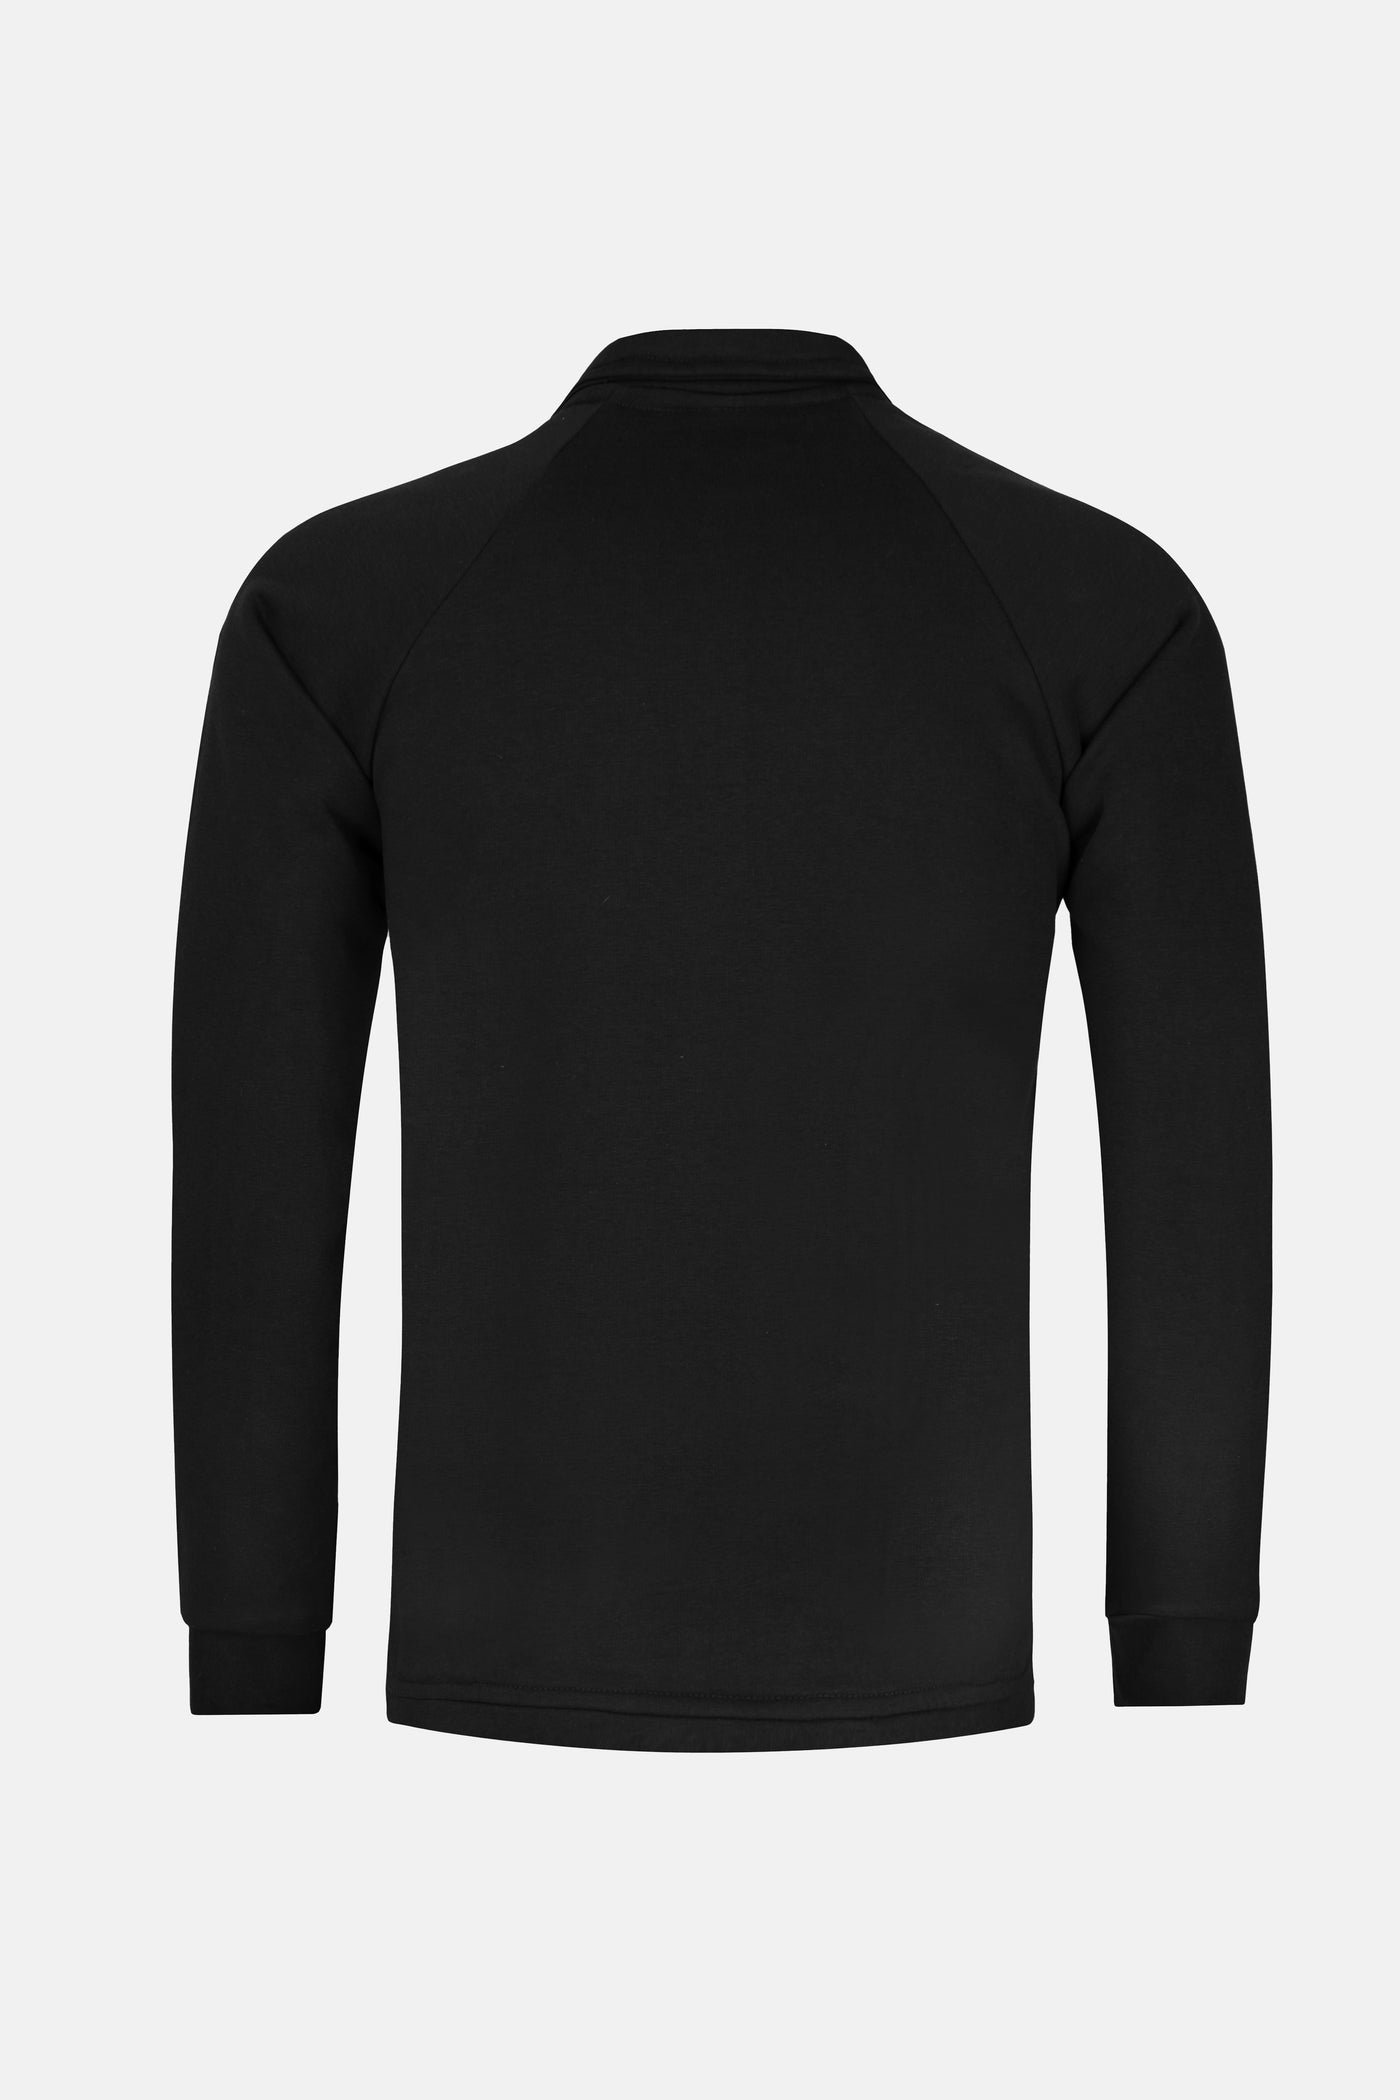 Black half zip Sweatshirt